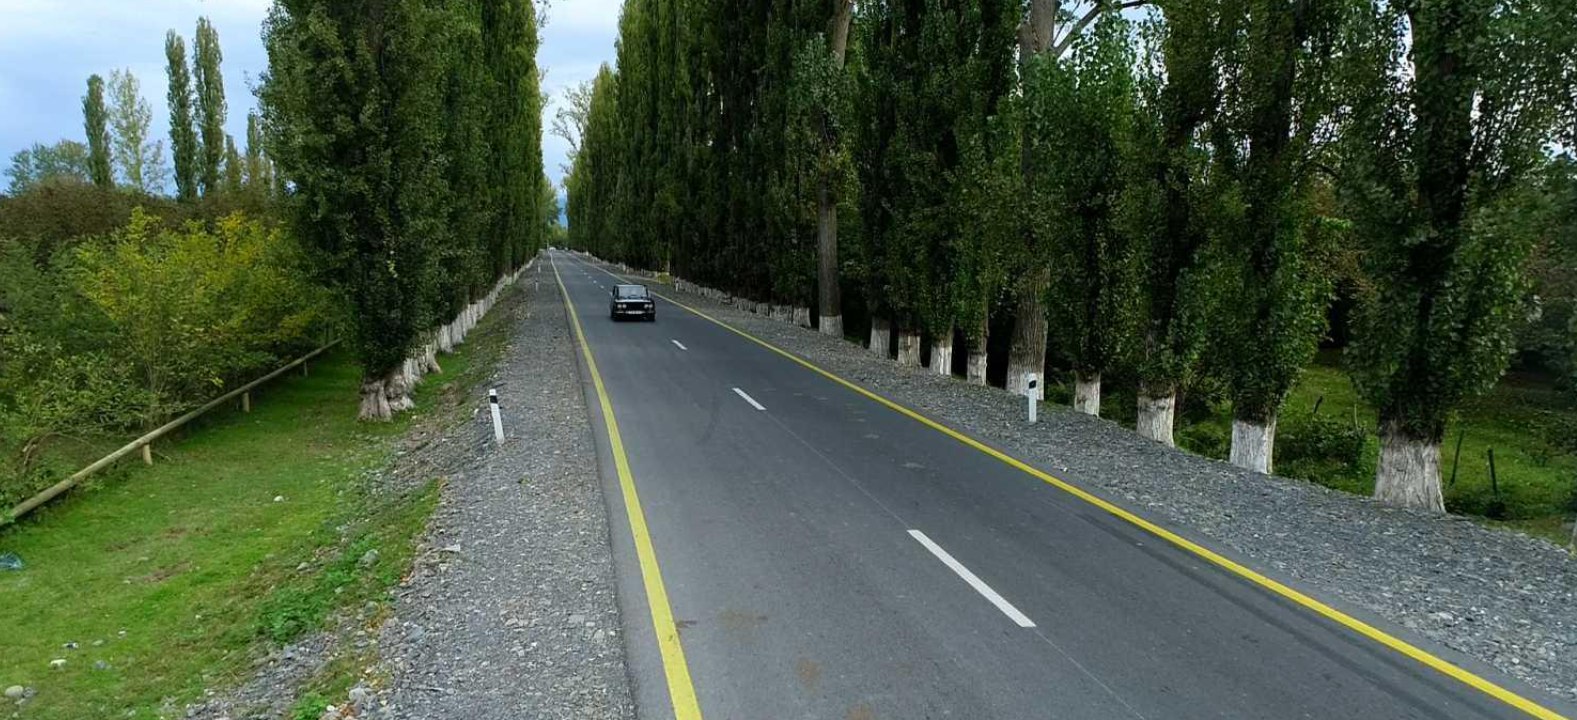 Zaqatalada bu yol yenidən quruldu - FOTO/VİDEO